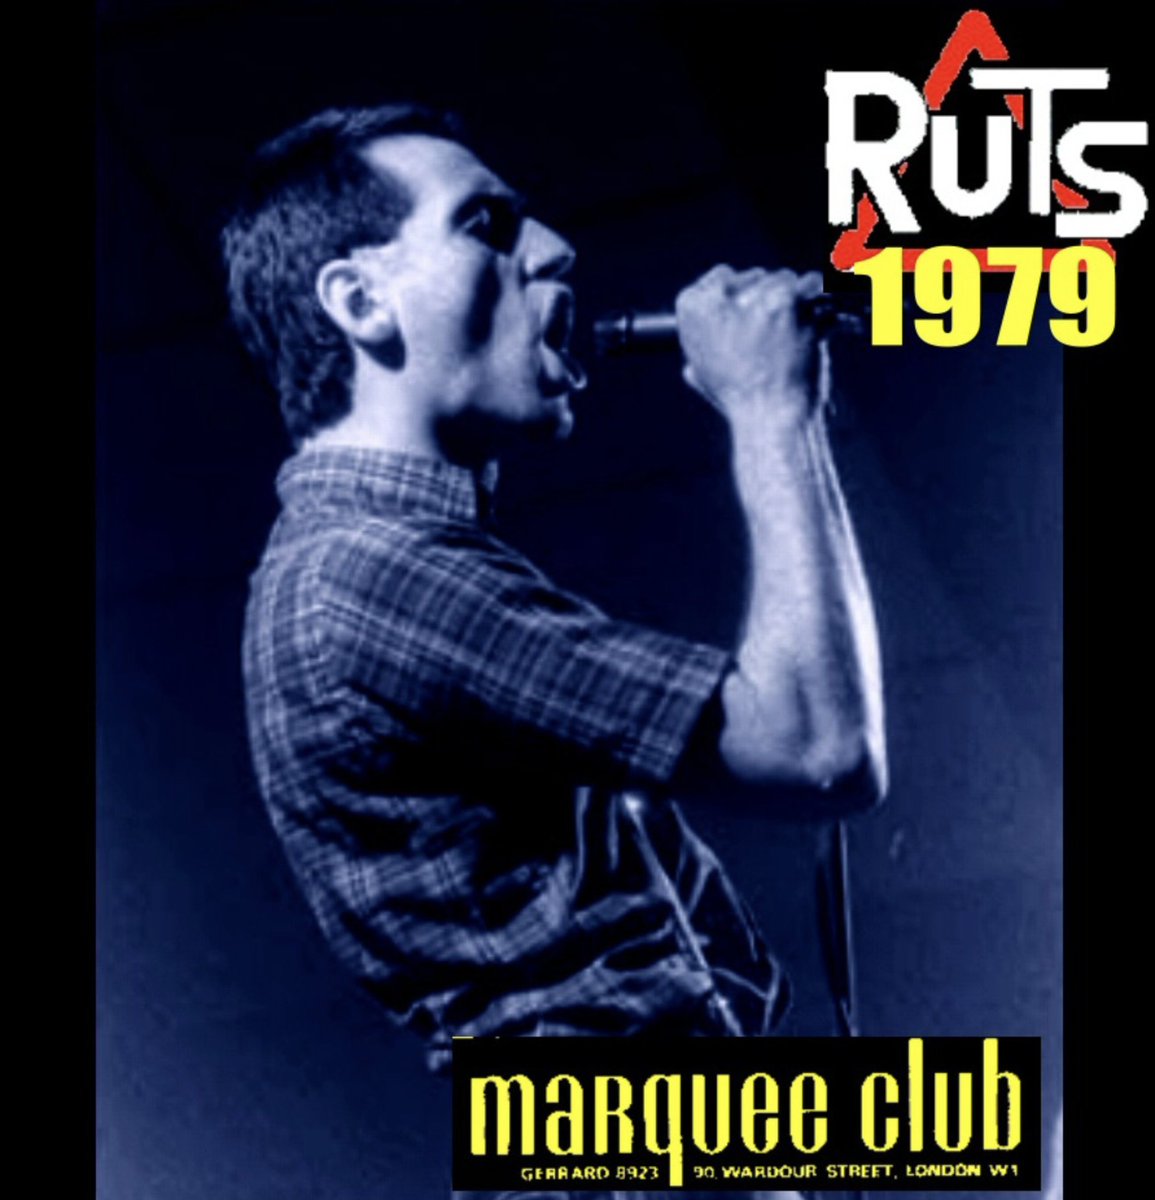 The Ruts - Marquee Club, London, 19th July 1979. bit.ly/3U0cFD9 #TheRuts @NewWaveAndPunk